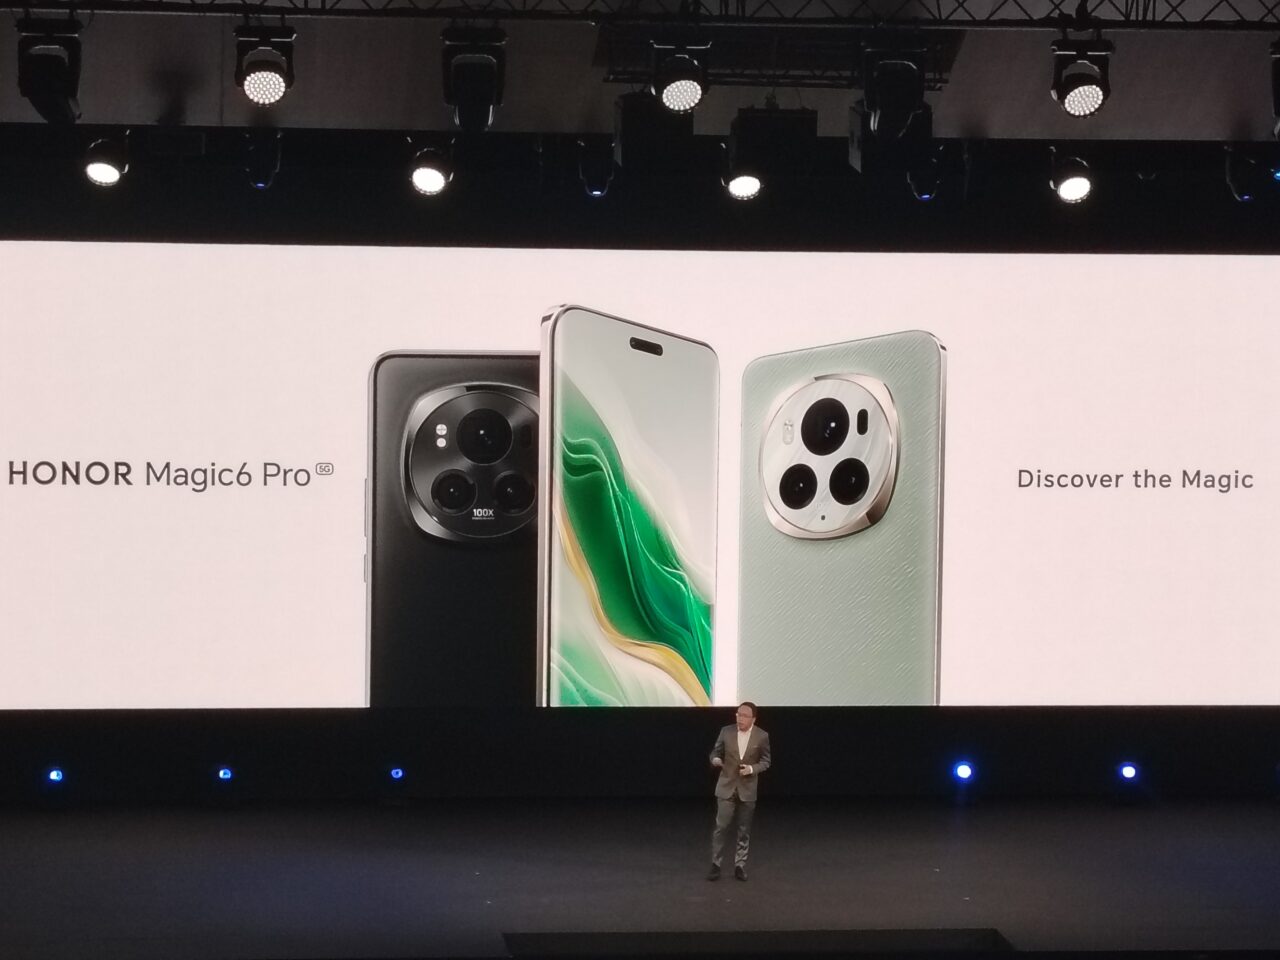 Prezentacja smartfonu HONOR Magic6 Pro na scenie z dużym ekranem wyświetlającym obrazy telefonu i hasło "Discover the Magic", w tle stojący mężczyzna w garniturze.